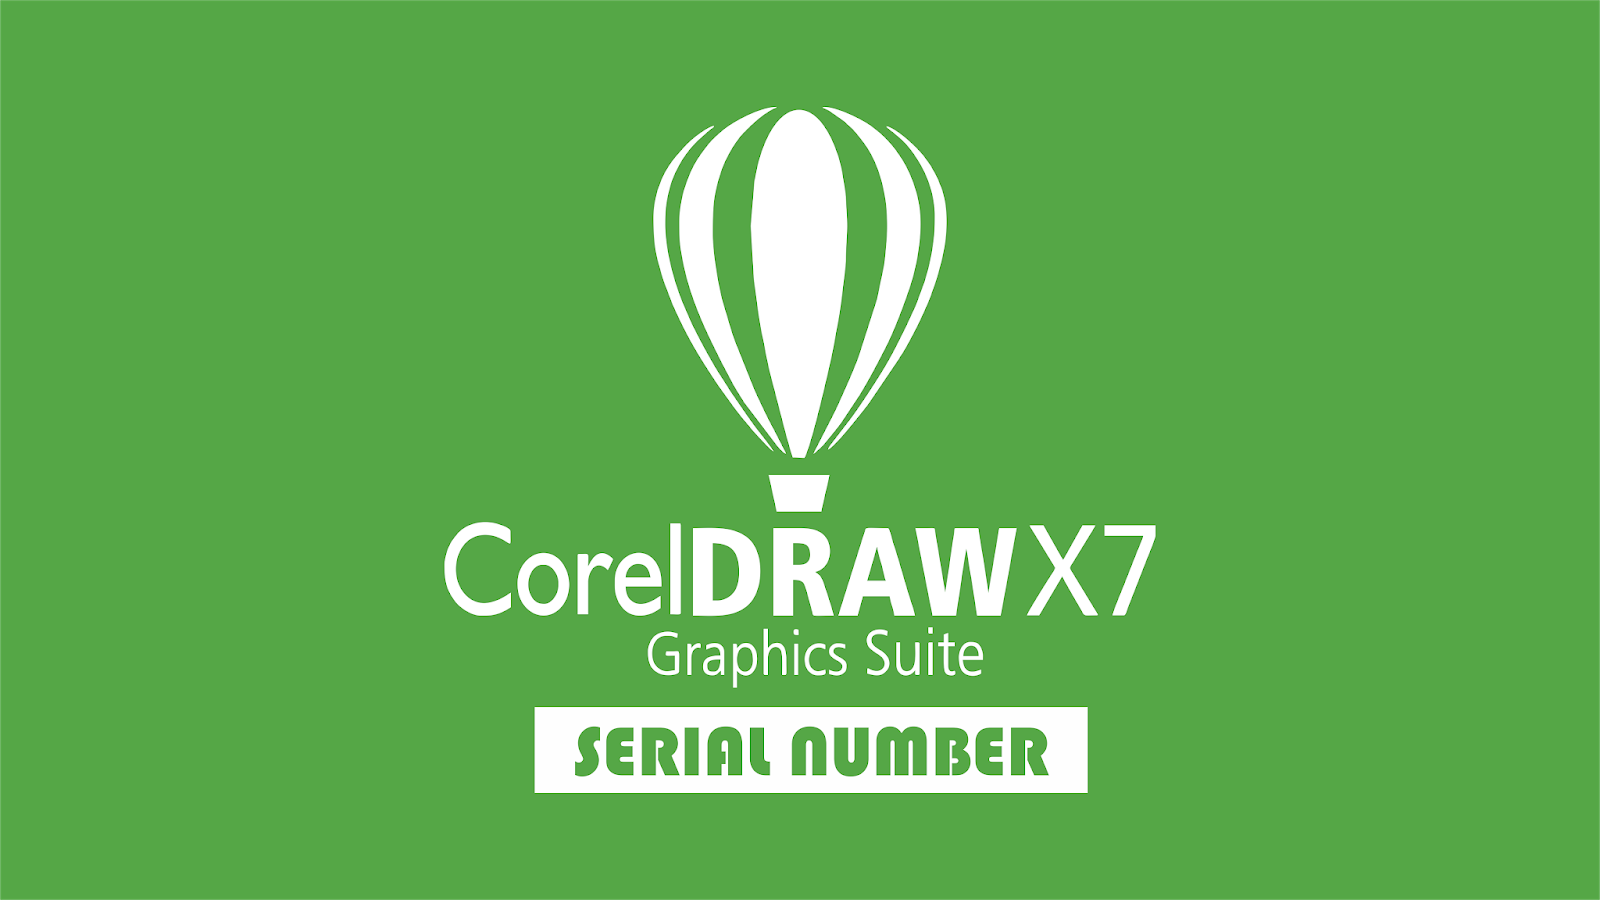 cara mendapatkan serial number corel draw x7 keygen bagas31